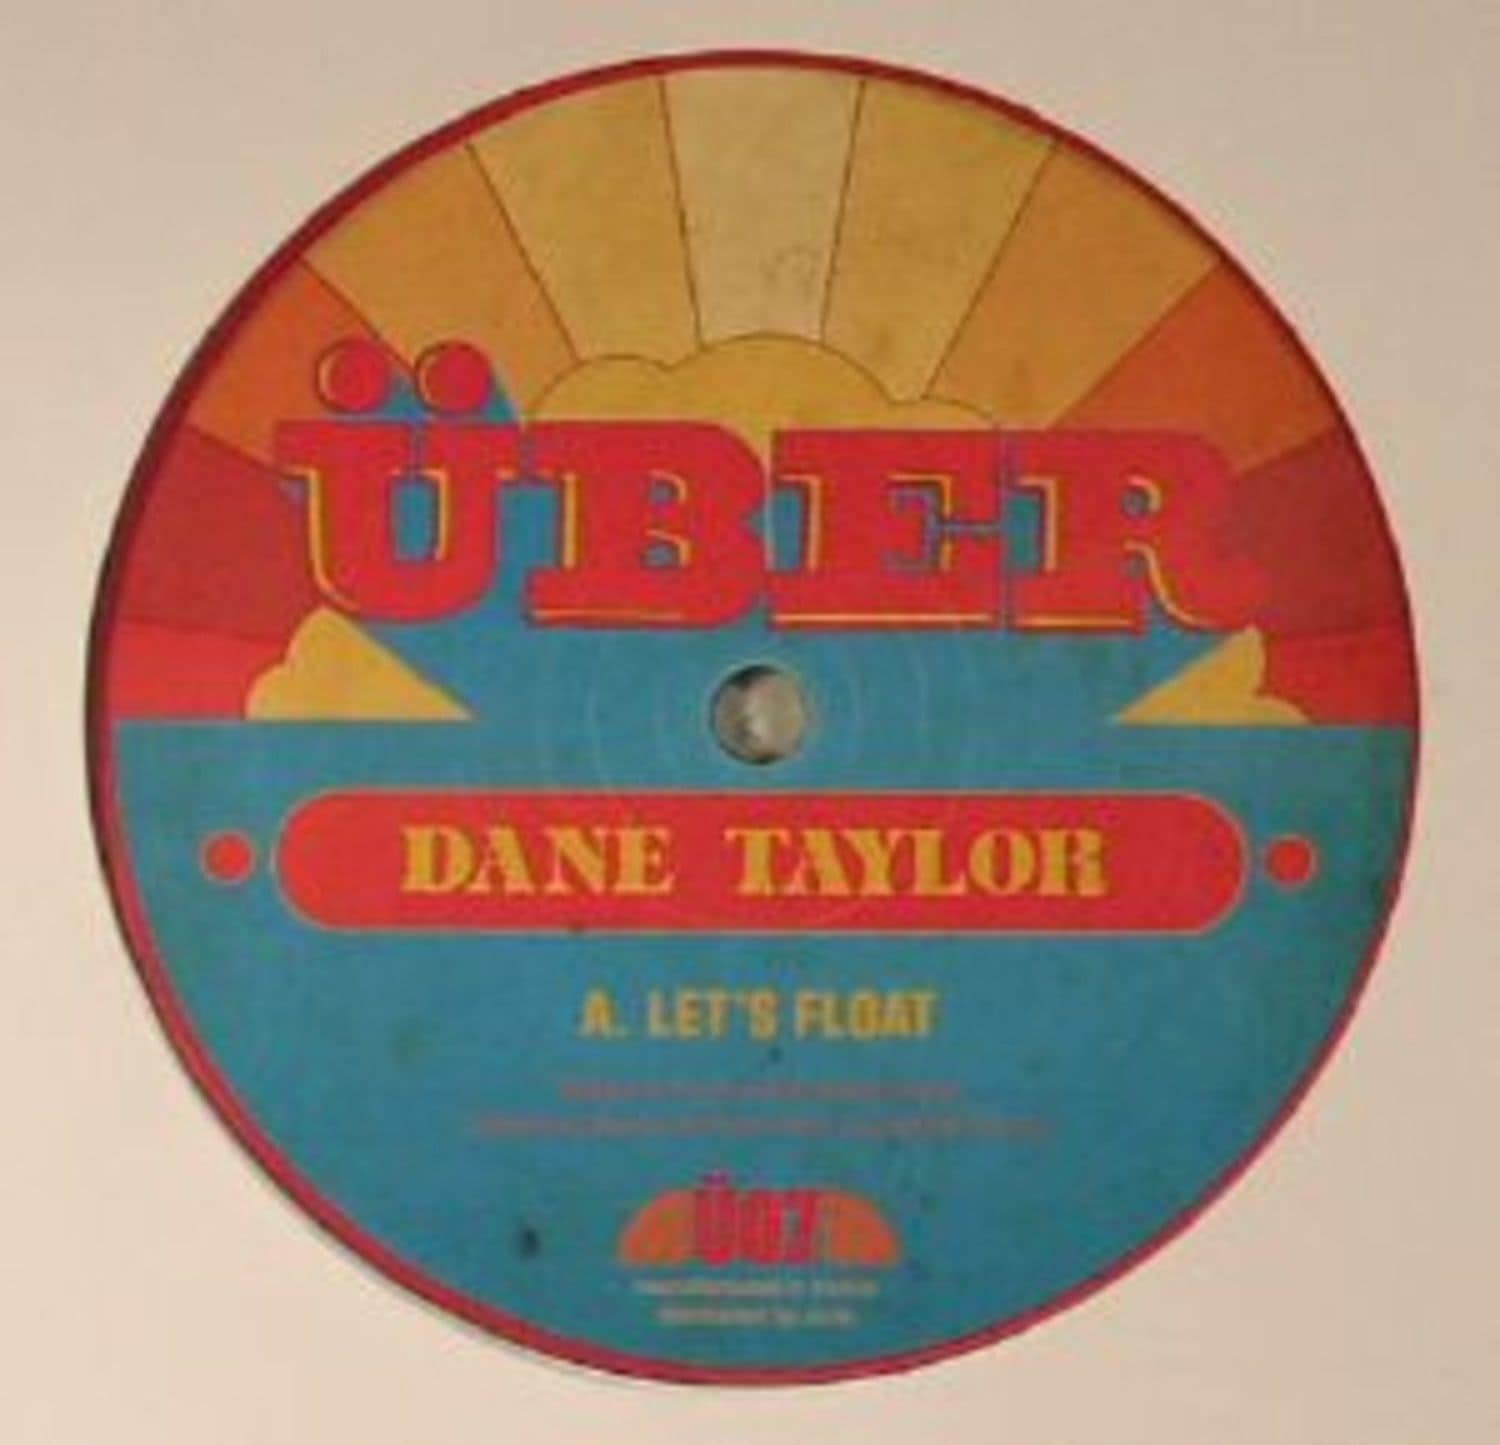 Dane Taylor - LETS FLOAT